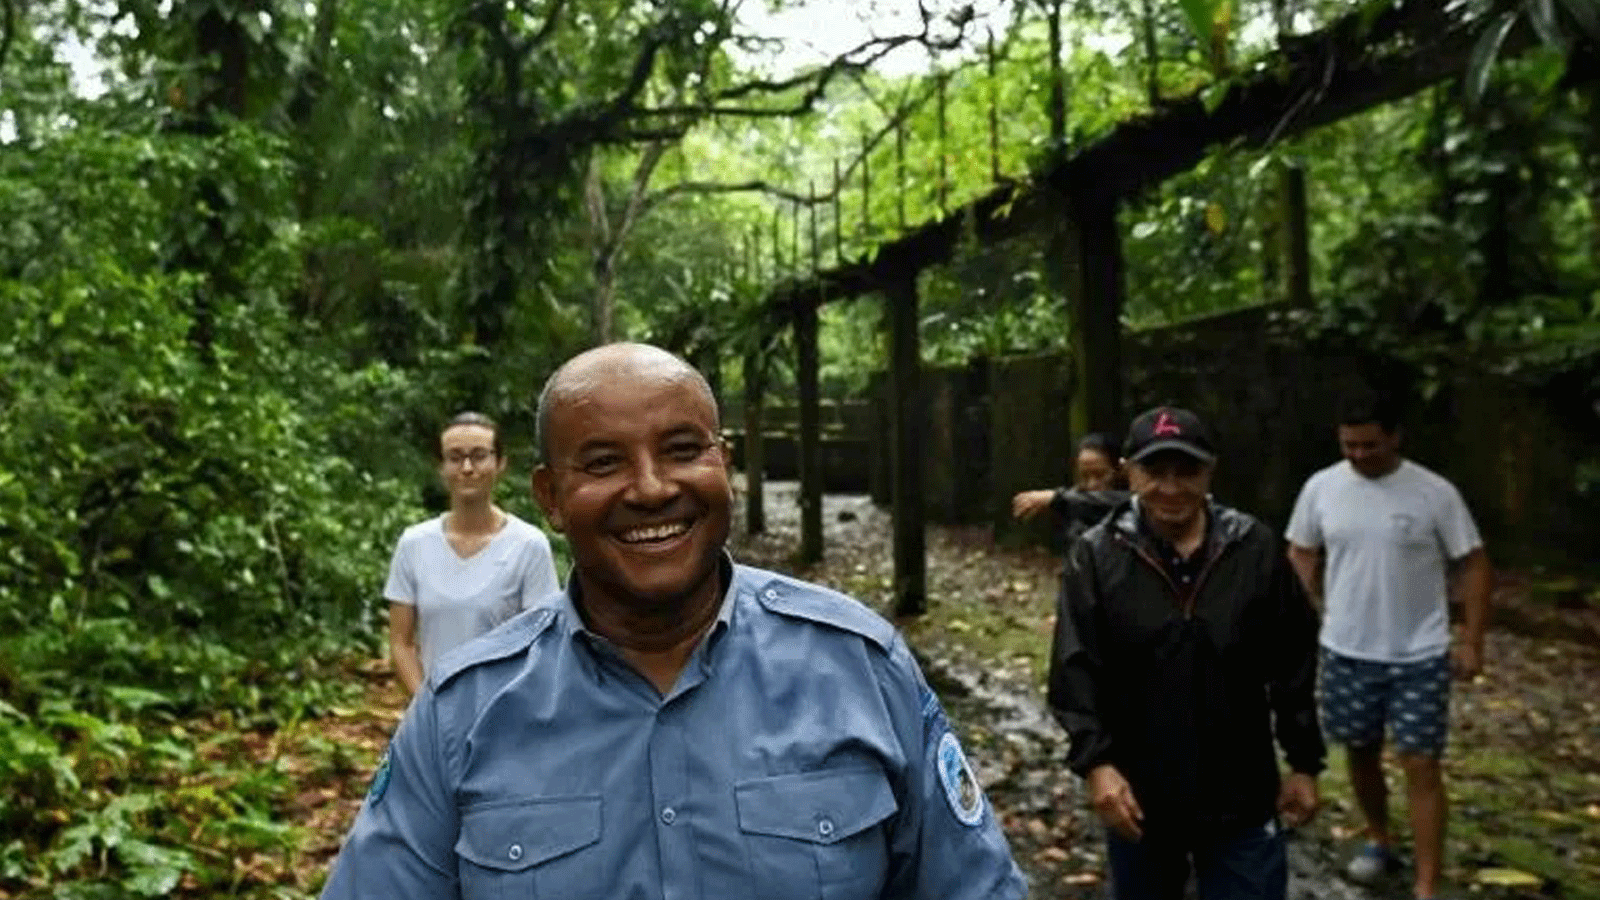 كورازون دي جيسوس أجوينو، حارس غابة، يرشد السائحين حول ما كان يُعد سجنًا (سجن جزيرة غورغونا)